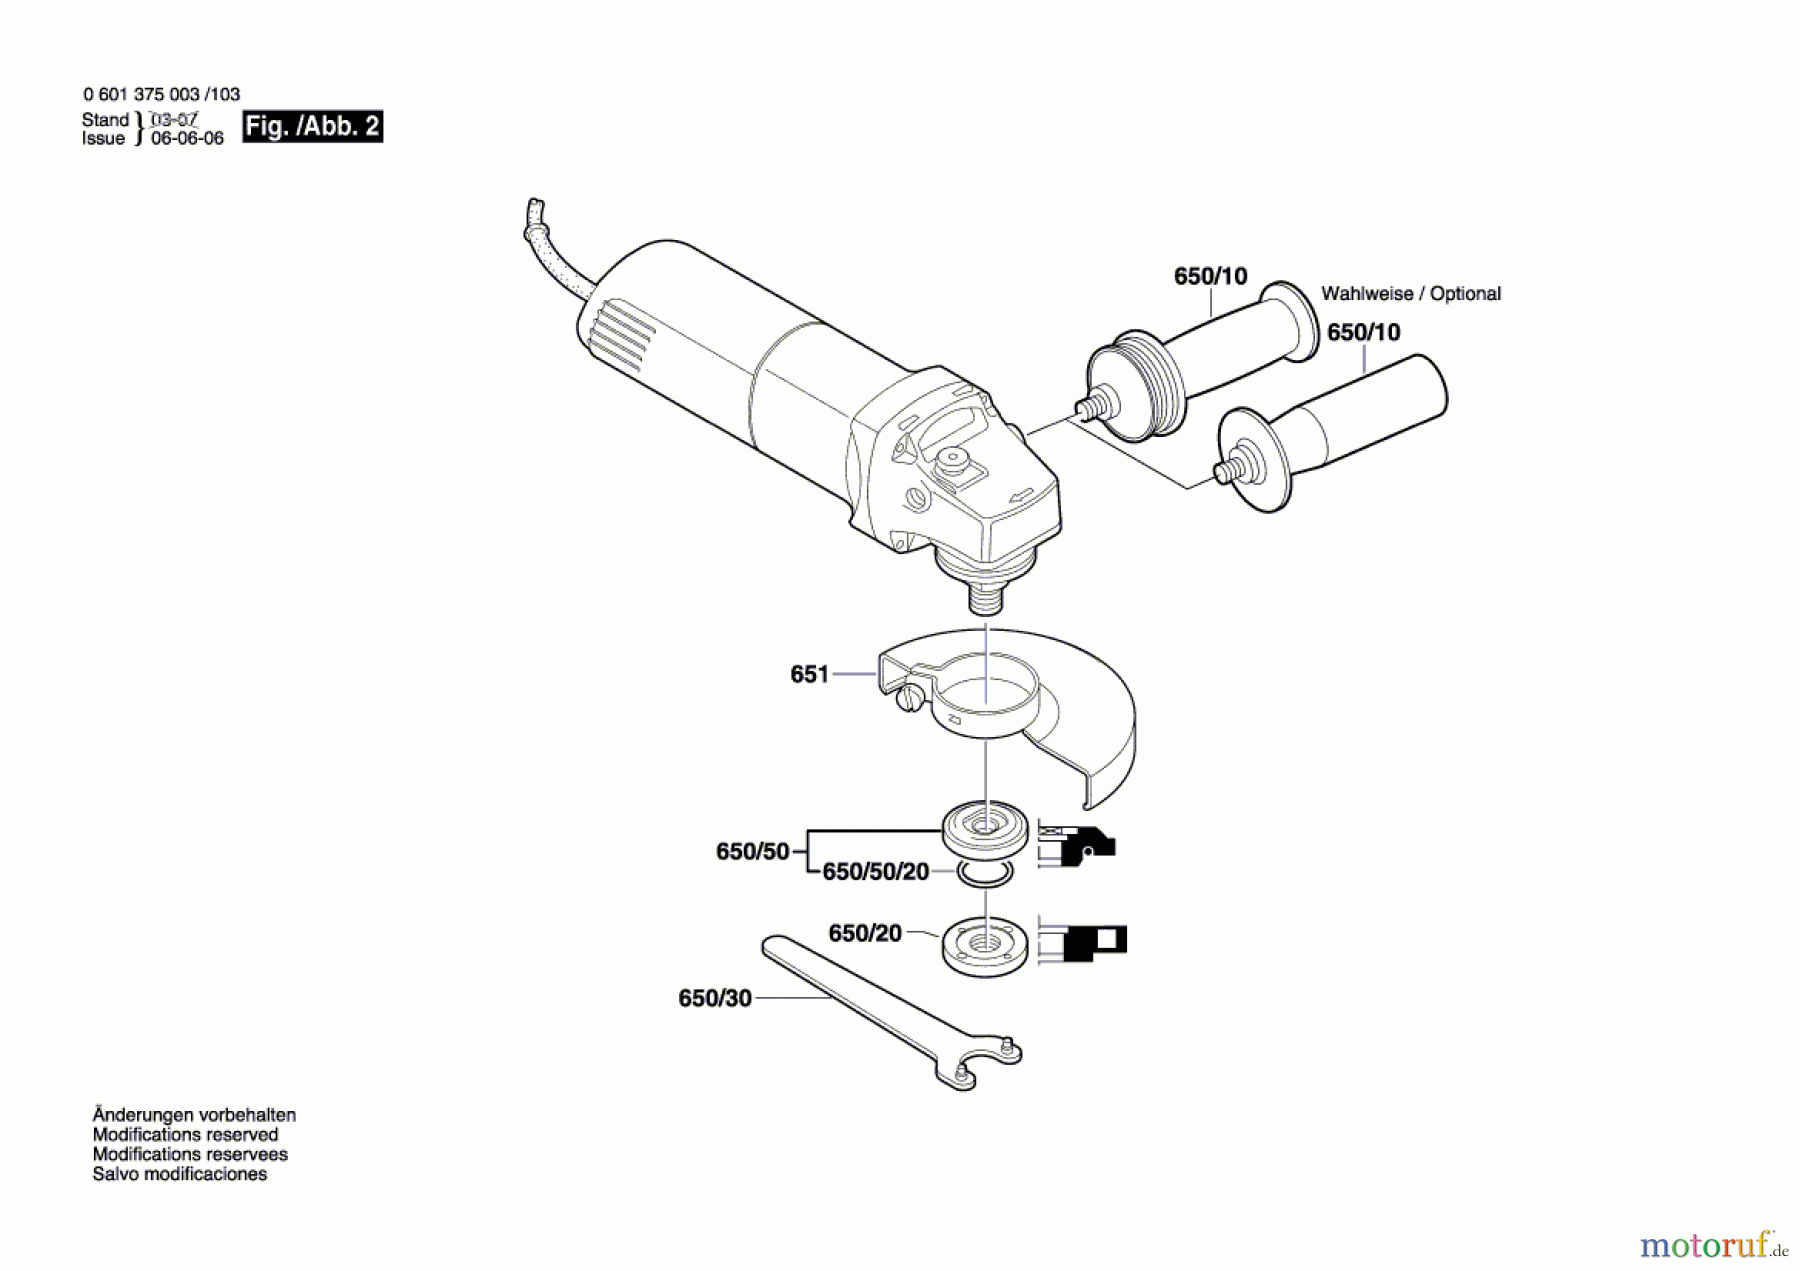  Bosch Werkzeug Winkelschleifer GWS 6-115 Seite 2